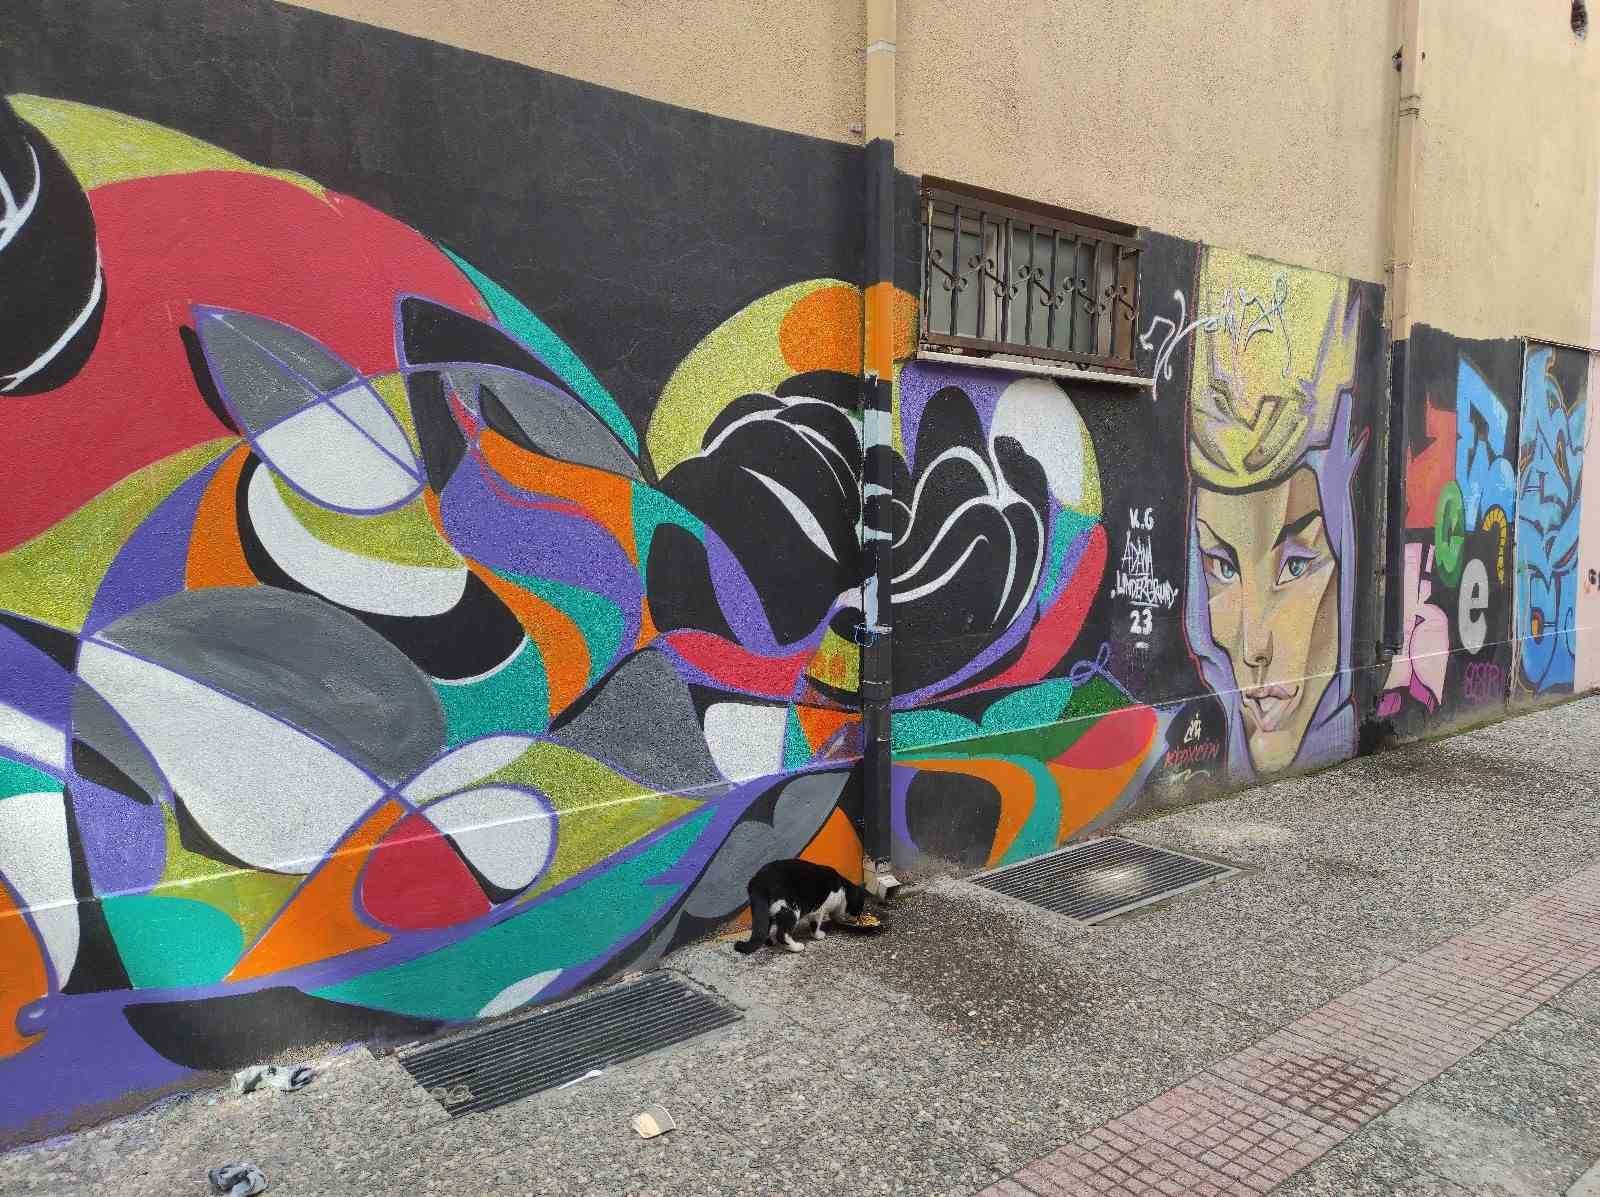 Ara sokaktaki grafiti vatandaşların beğenisini topluyor